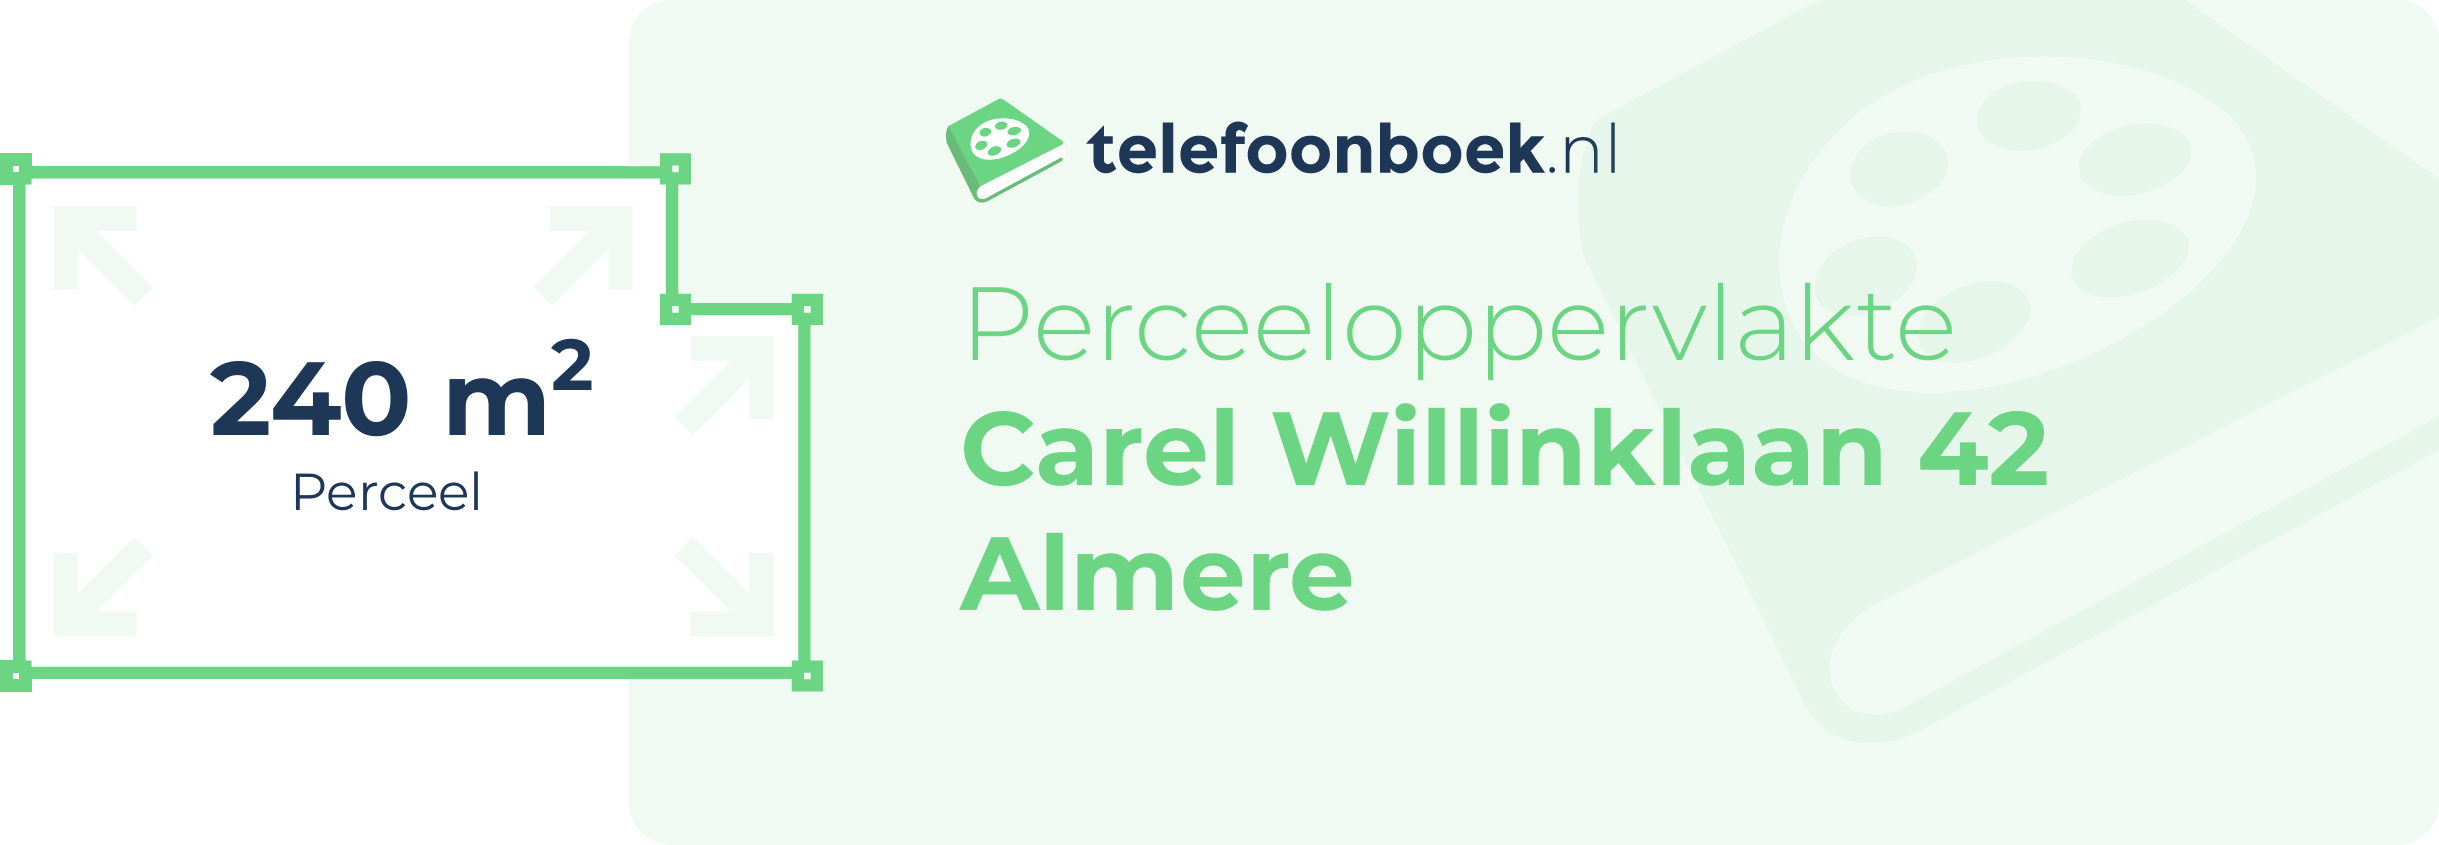 Perceeloppervlakte Carel Willinklaan 42 Almere